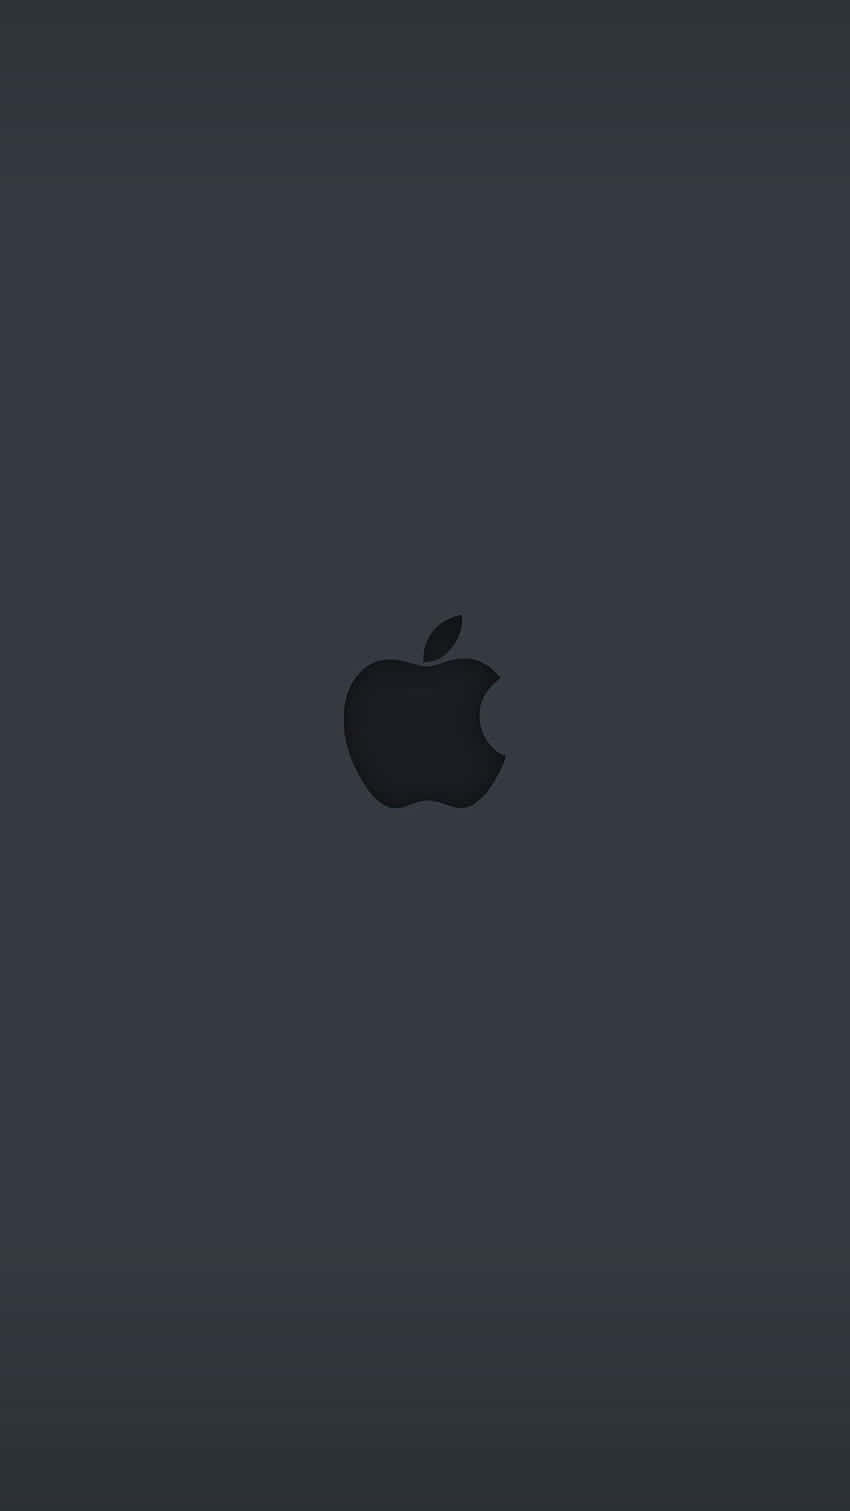 Logode Apple En Negro En Gris Fondo de pantalla